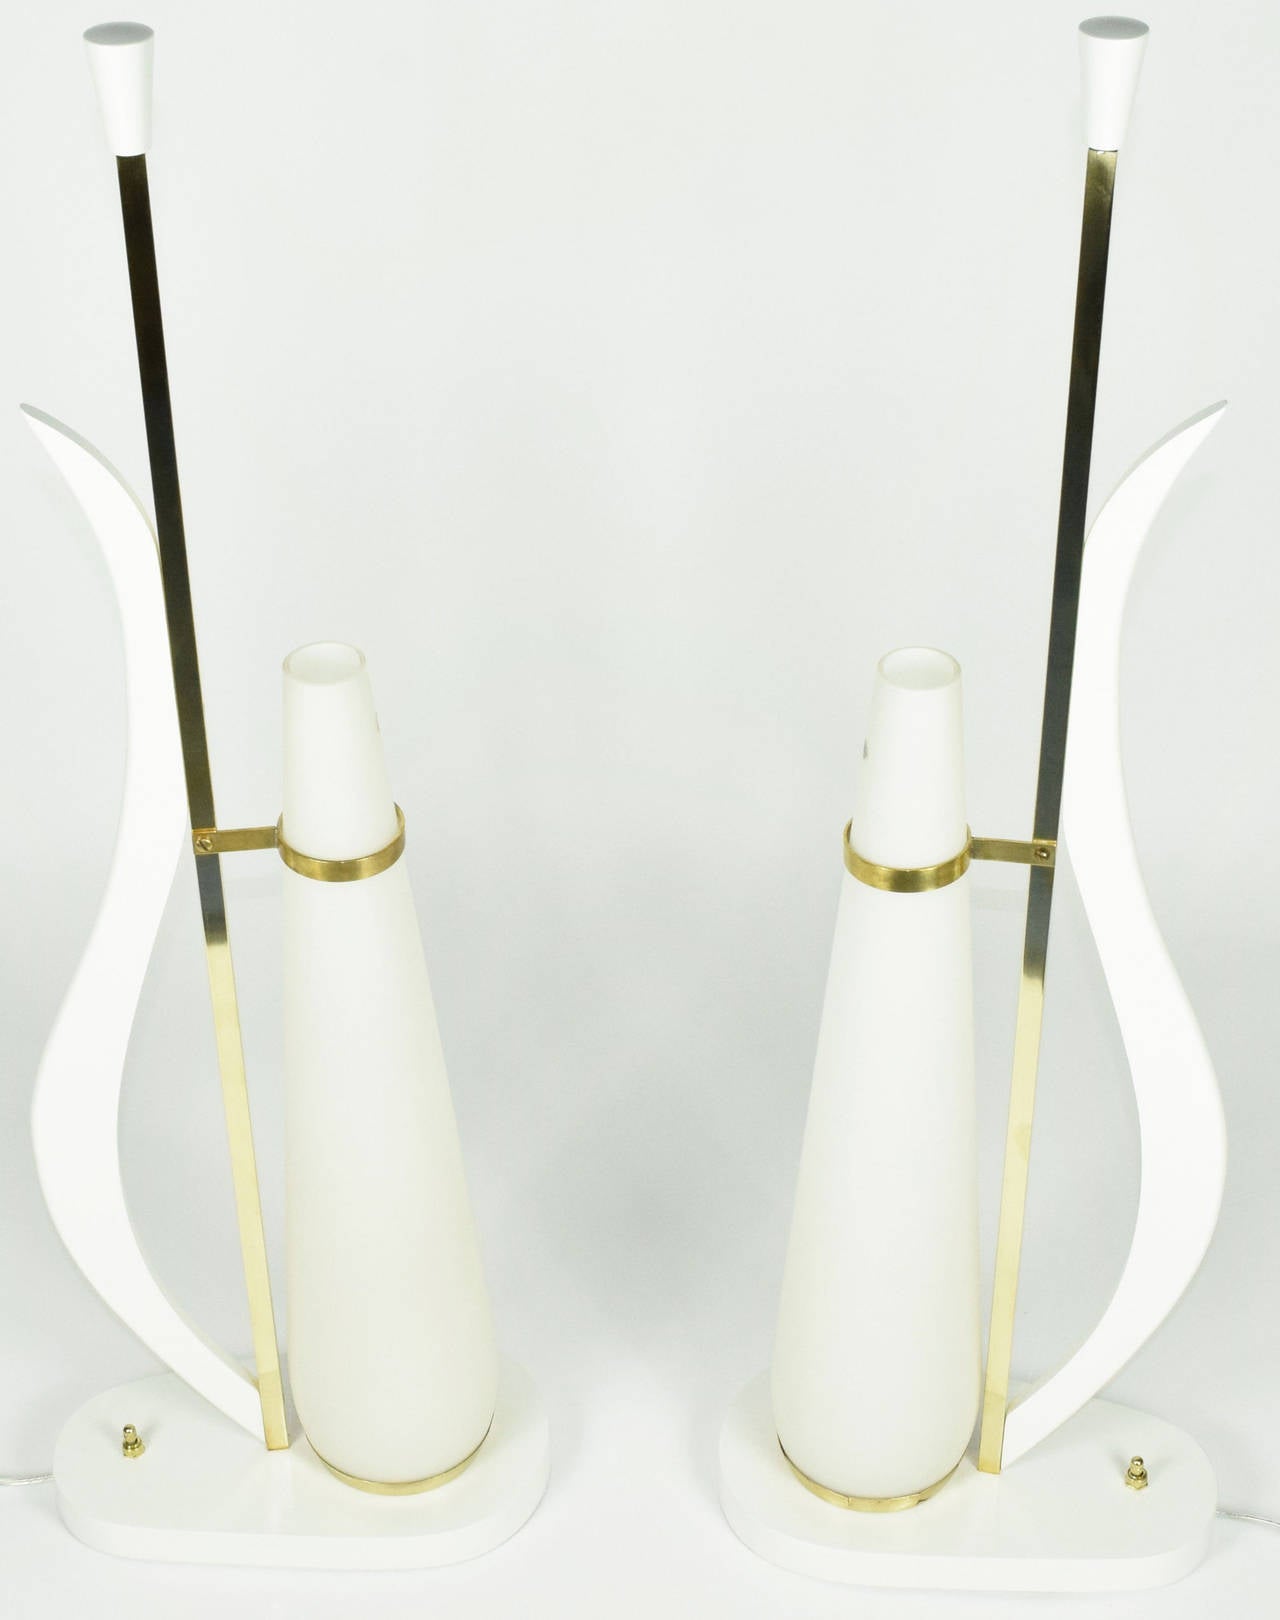 Il s'agit d'une paire spéciale de lampes de table en verre italien. Les lampes ont été entièrement restaurées dans une finition blanche et sont en très bon état. Le verre est d'origine Murano en blanc opaque.